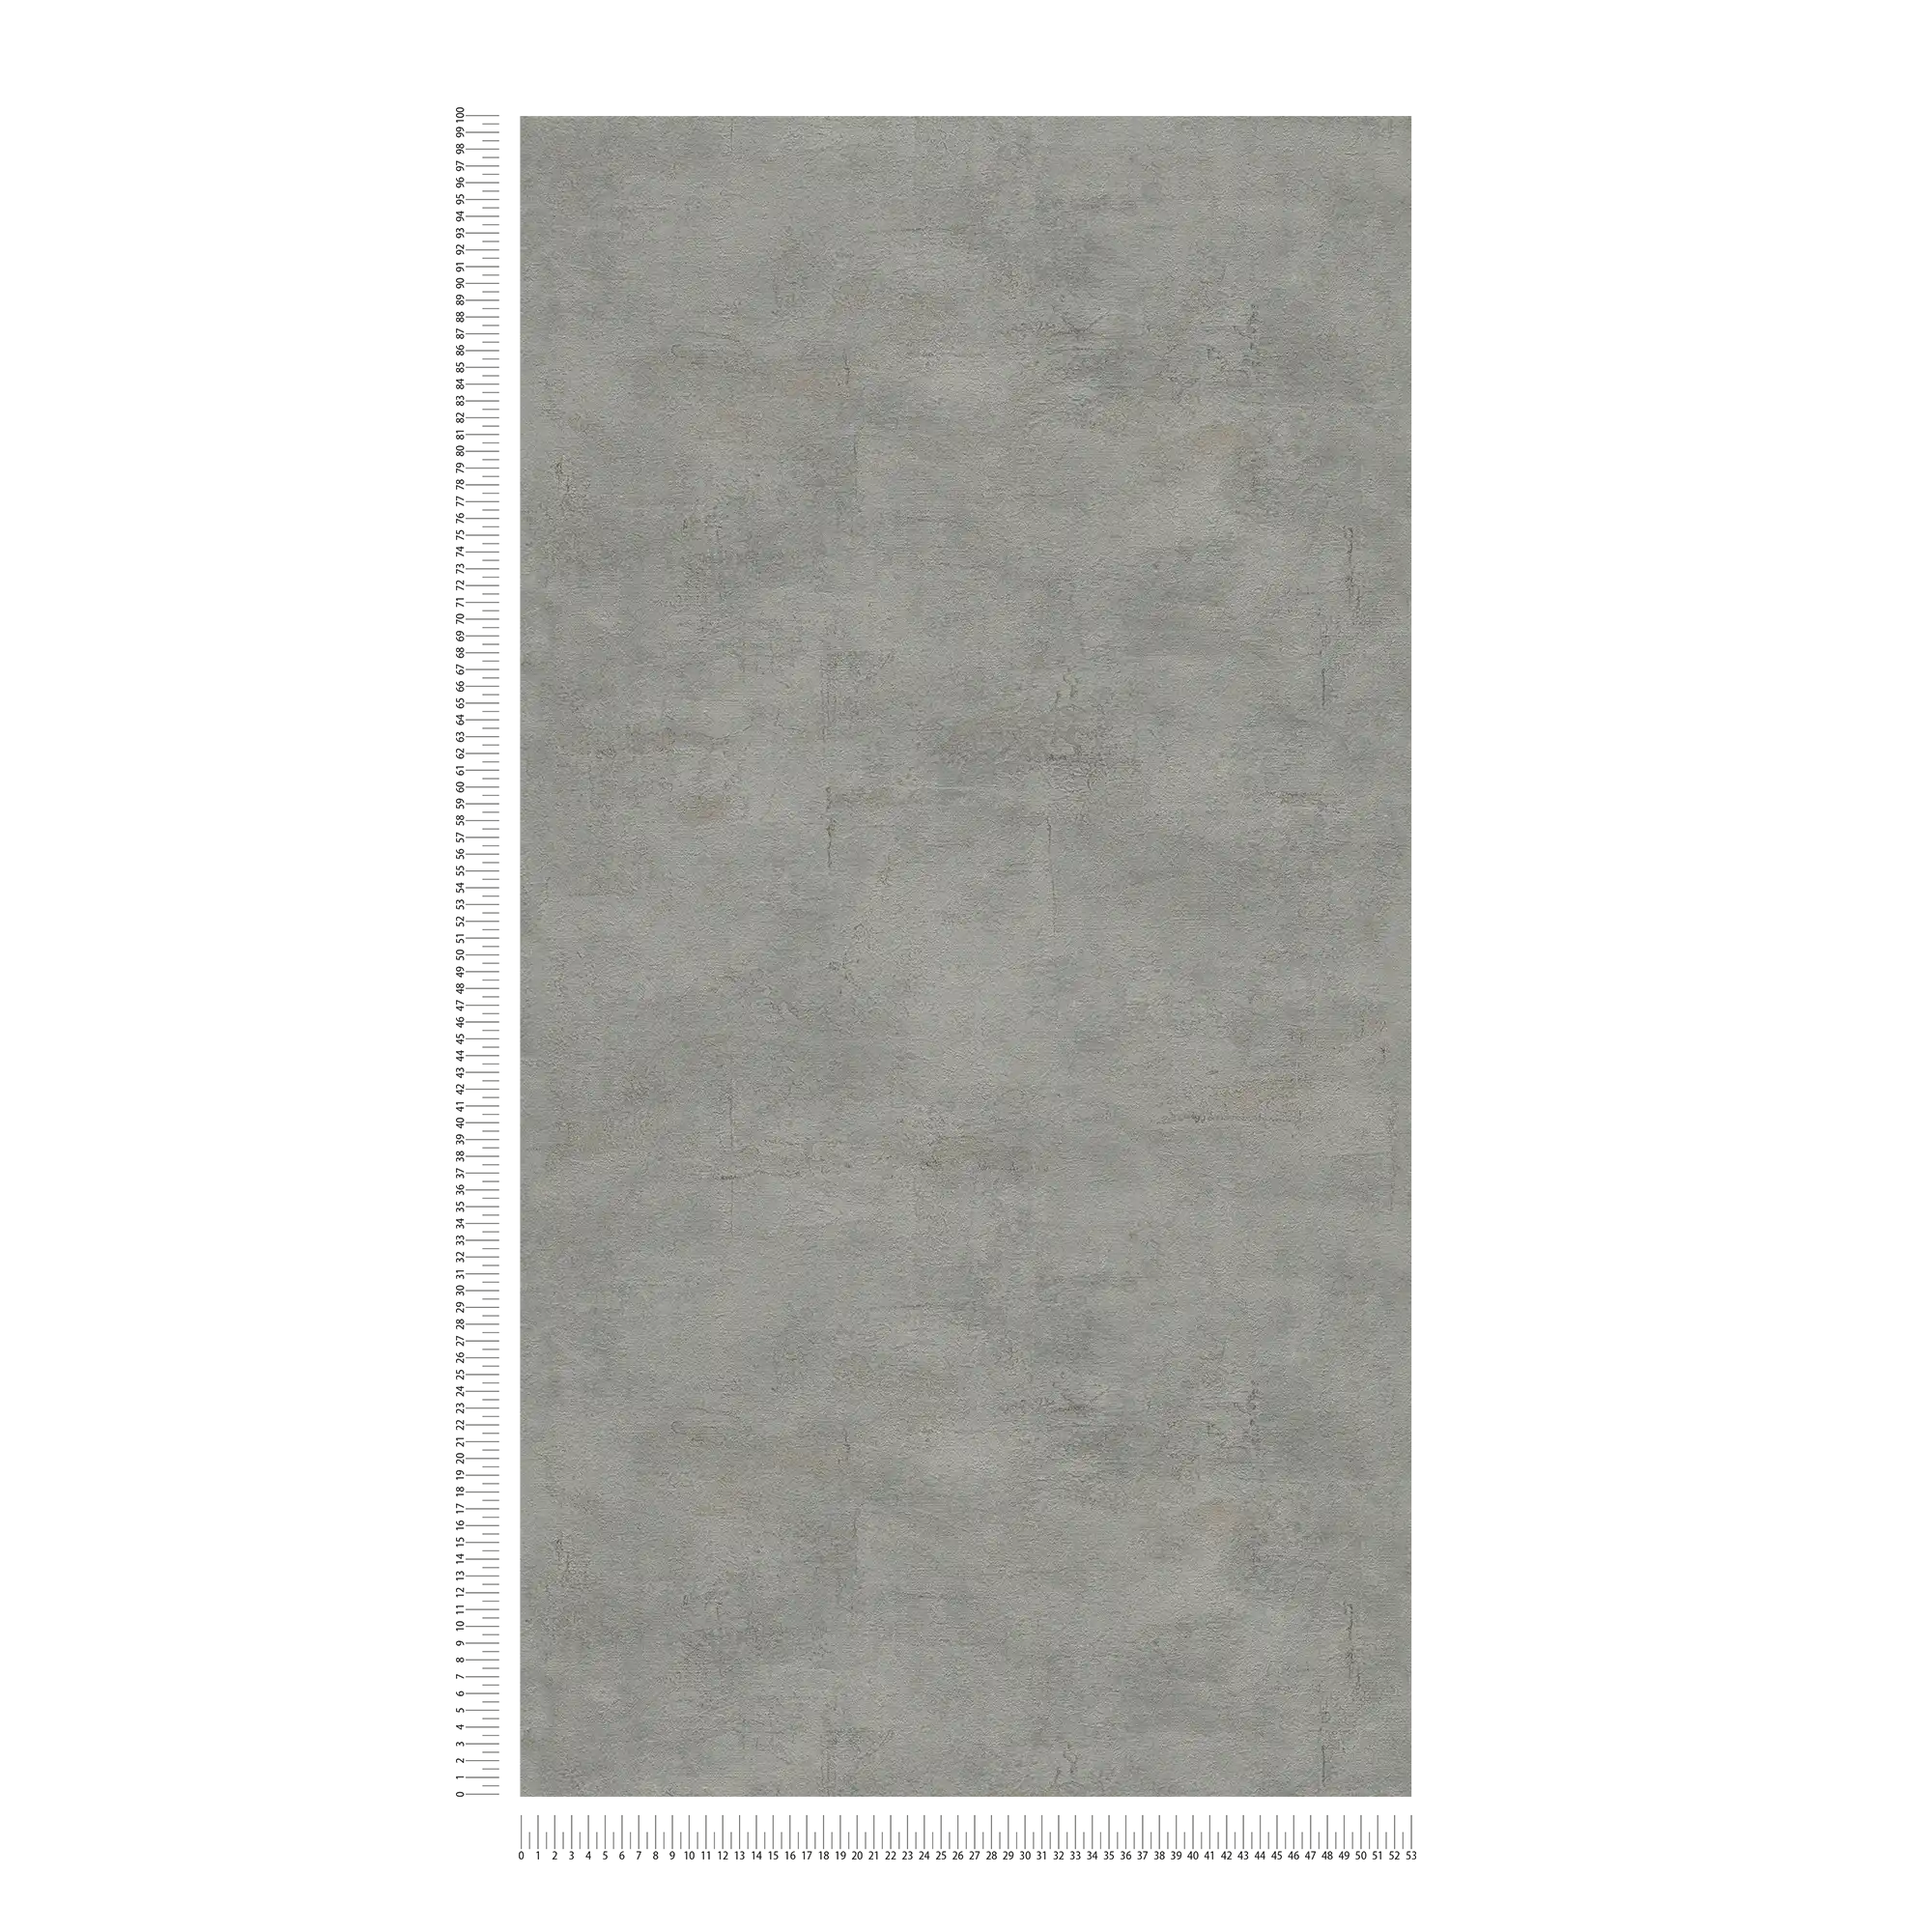             Papel pintado texturizado con aspecto de yeso gris oscuro - gris
        